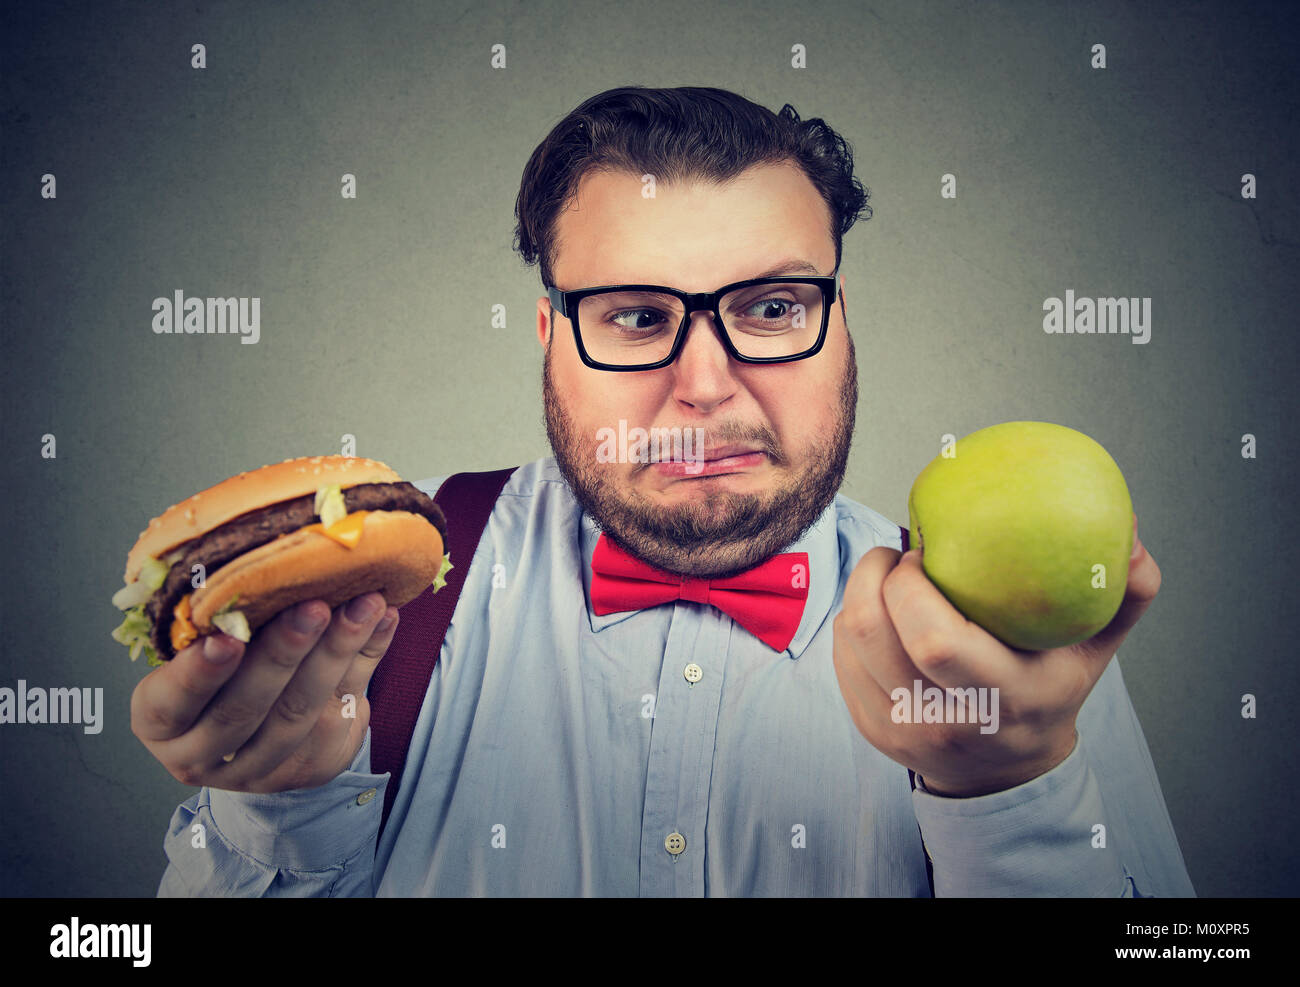 Übergewichtigen Mann, Hamburger und green apple Probleme mit Diät Wahl. Stockfoto